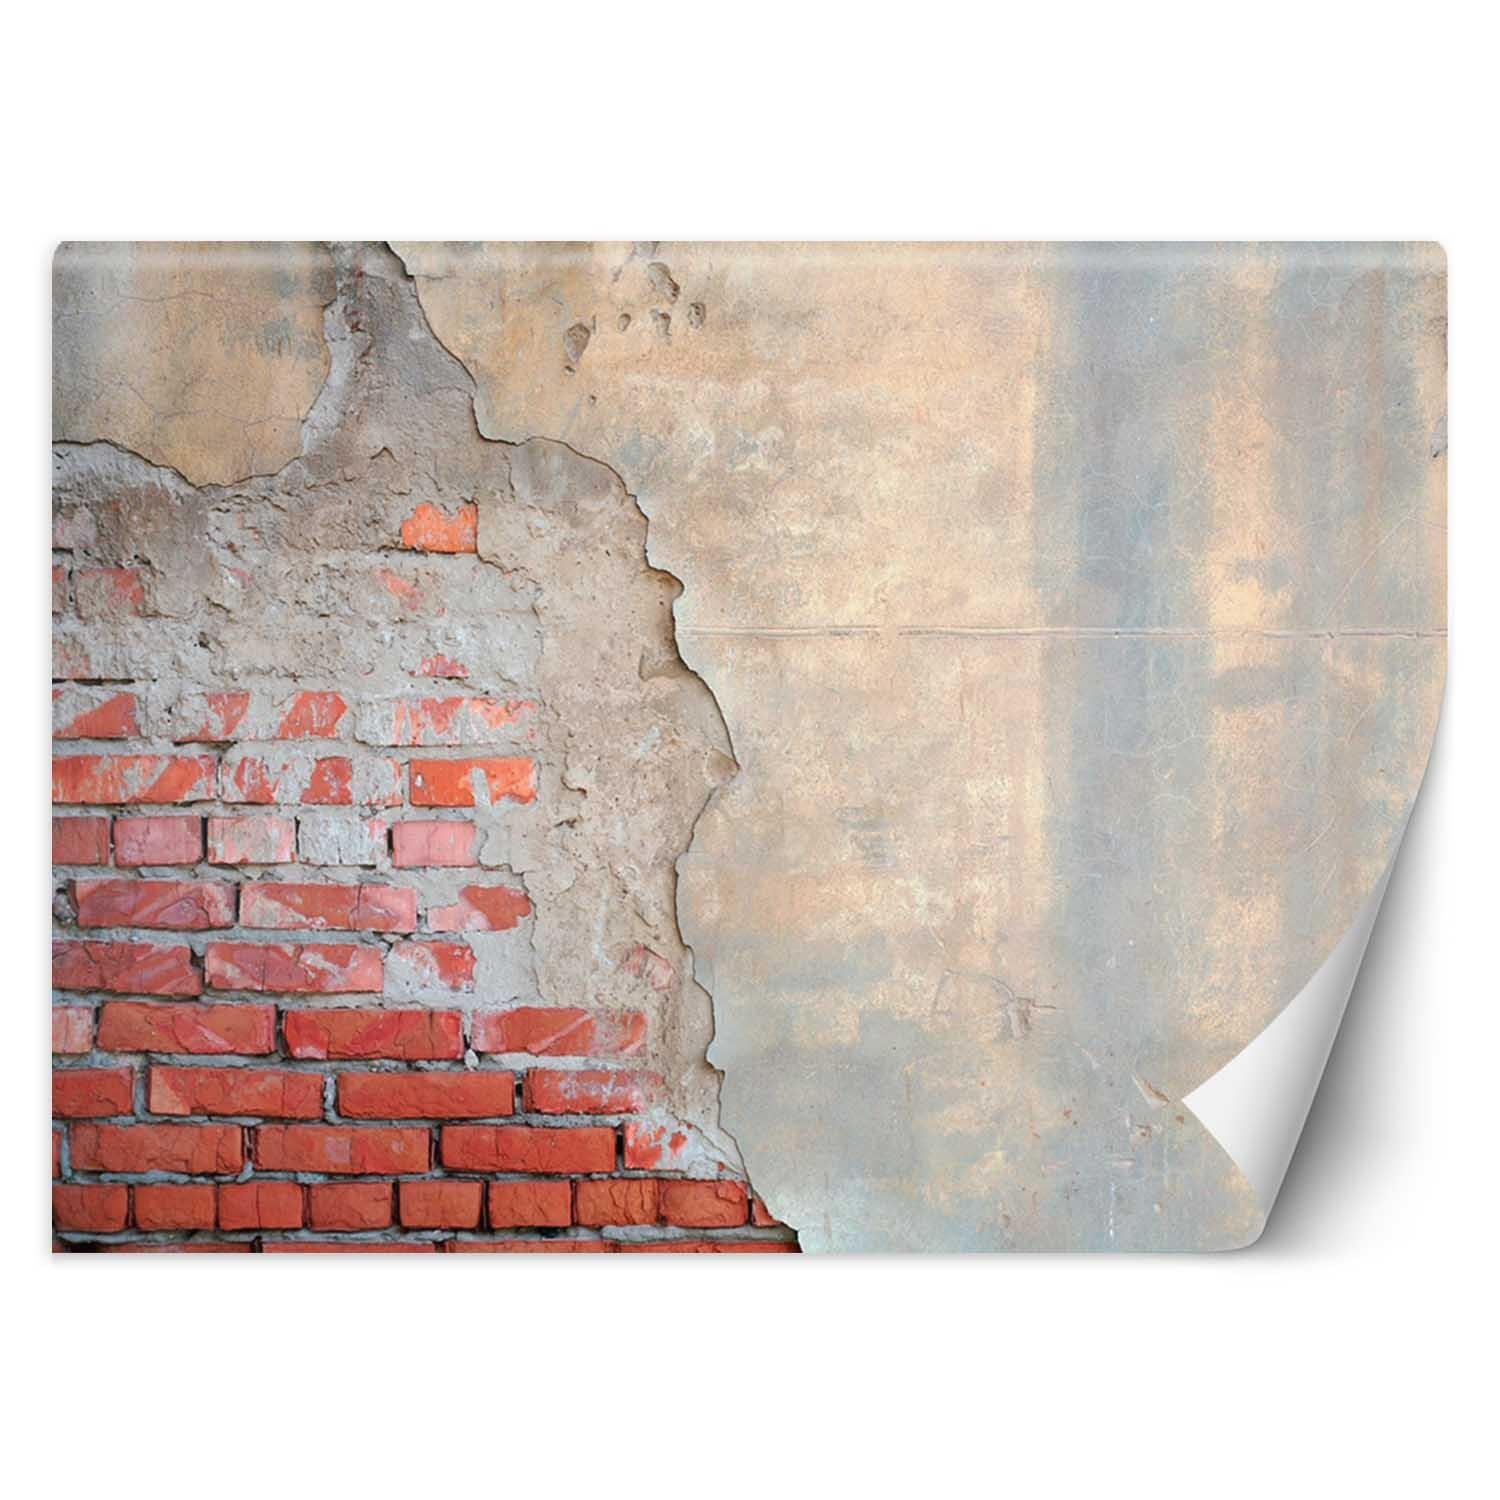 Trend24 – Behang – Bakstenen Muur – Vliesbehang – Behang Woonkamer – Fotobehang – 450x315x2 cm – Incl. behanglijm